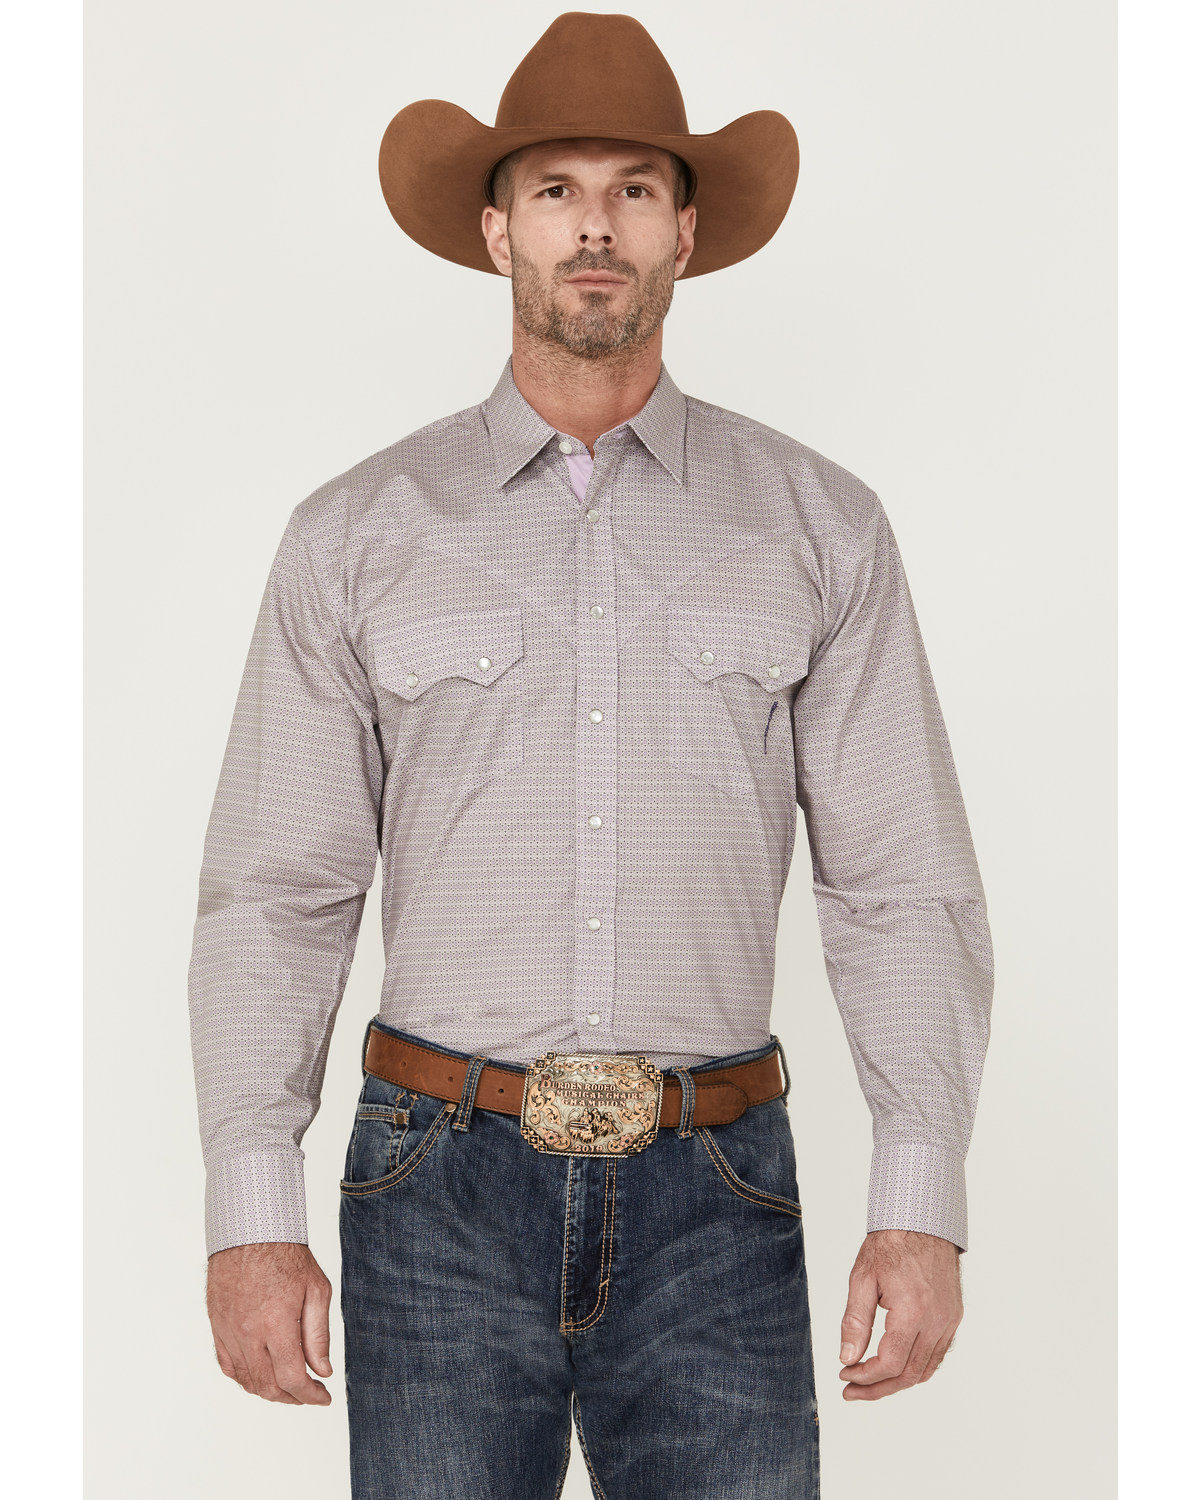 Resistol Men's Arcadia Geo Print Long Sleeve Pearl Snap Western Shirt